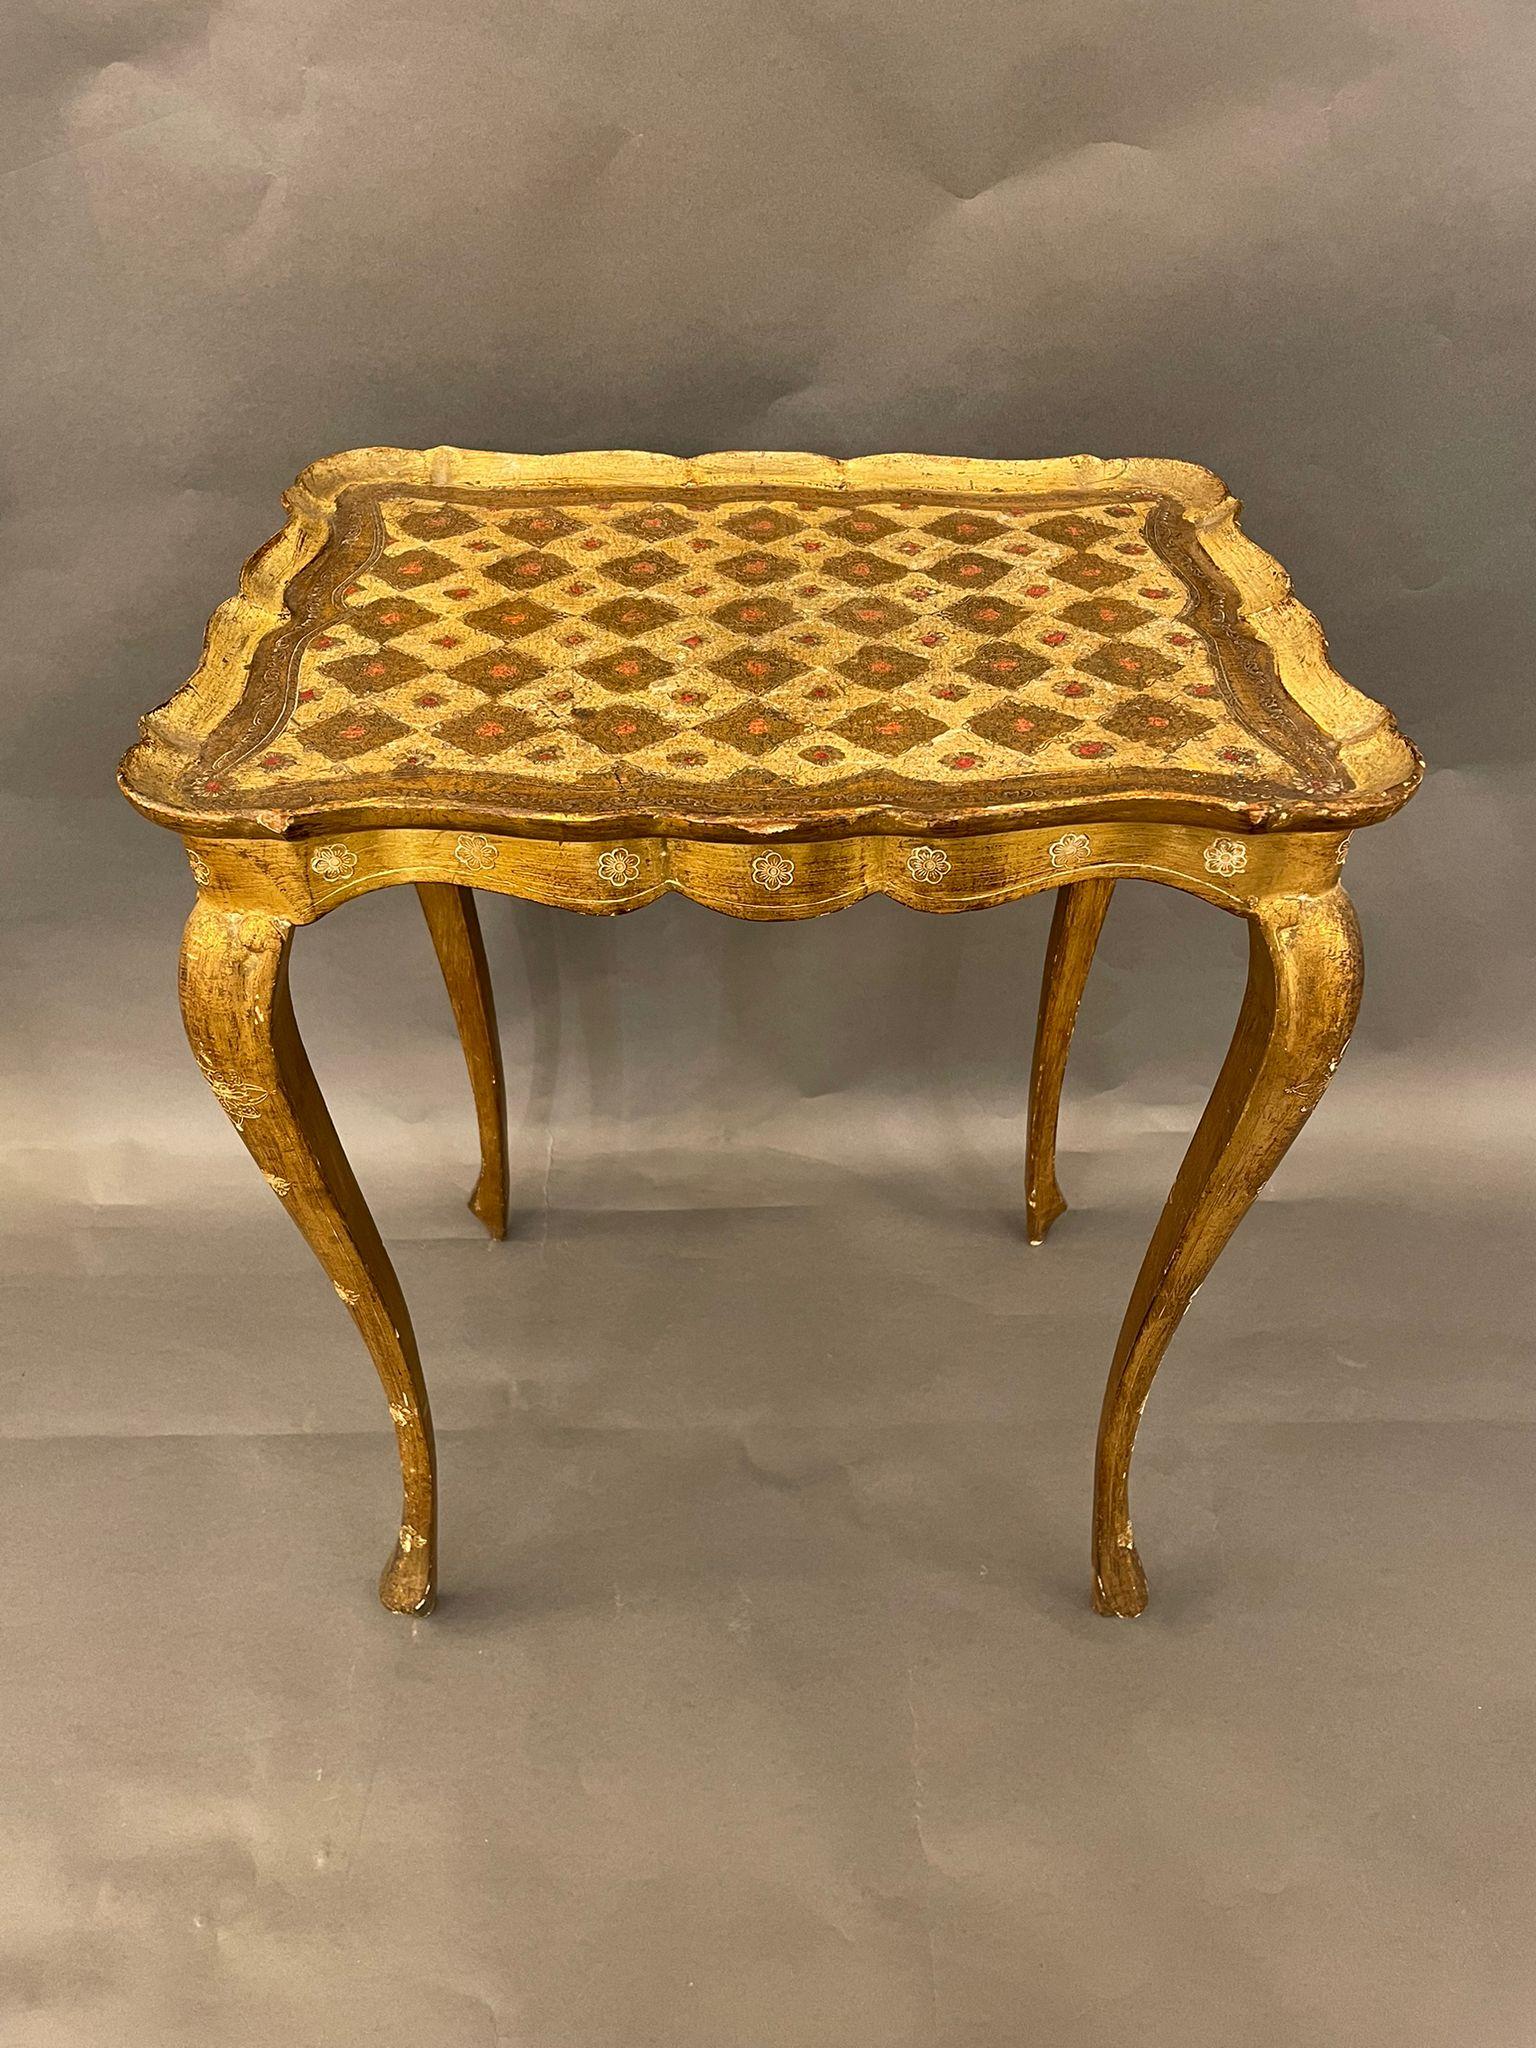 Petite table d'appoint italienne florentine très décorative du milieu du siècle dernier en bois doré, dans le style de la Régence d'Hollywood, vers les années 1940.